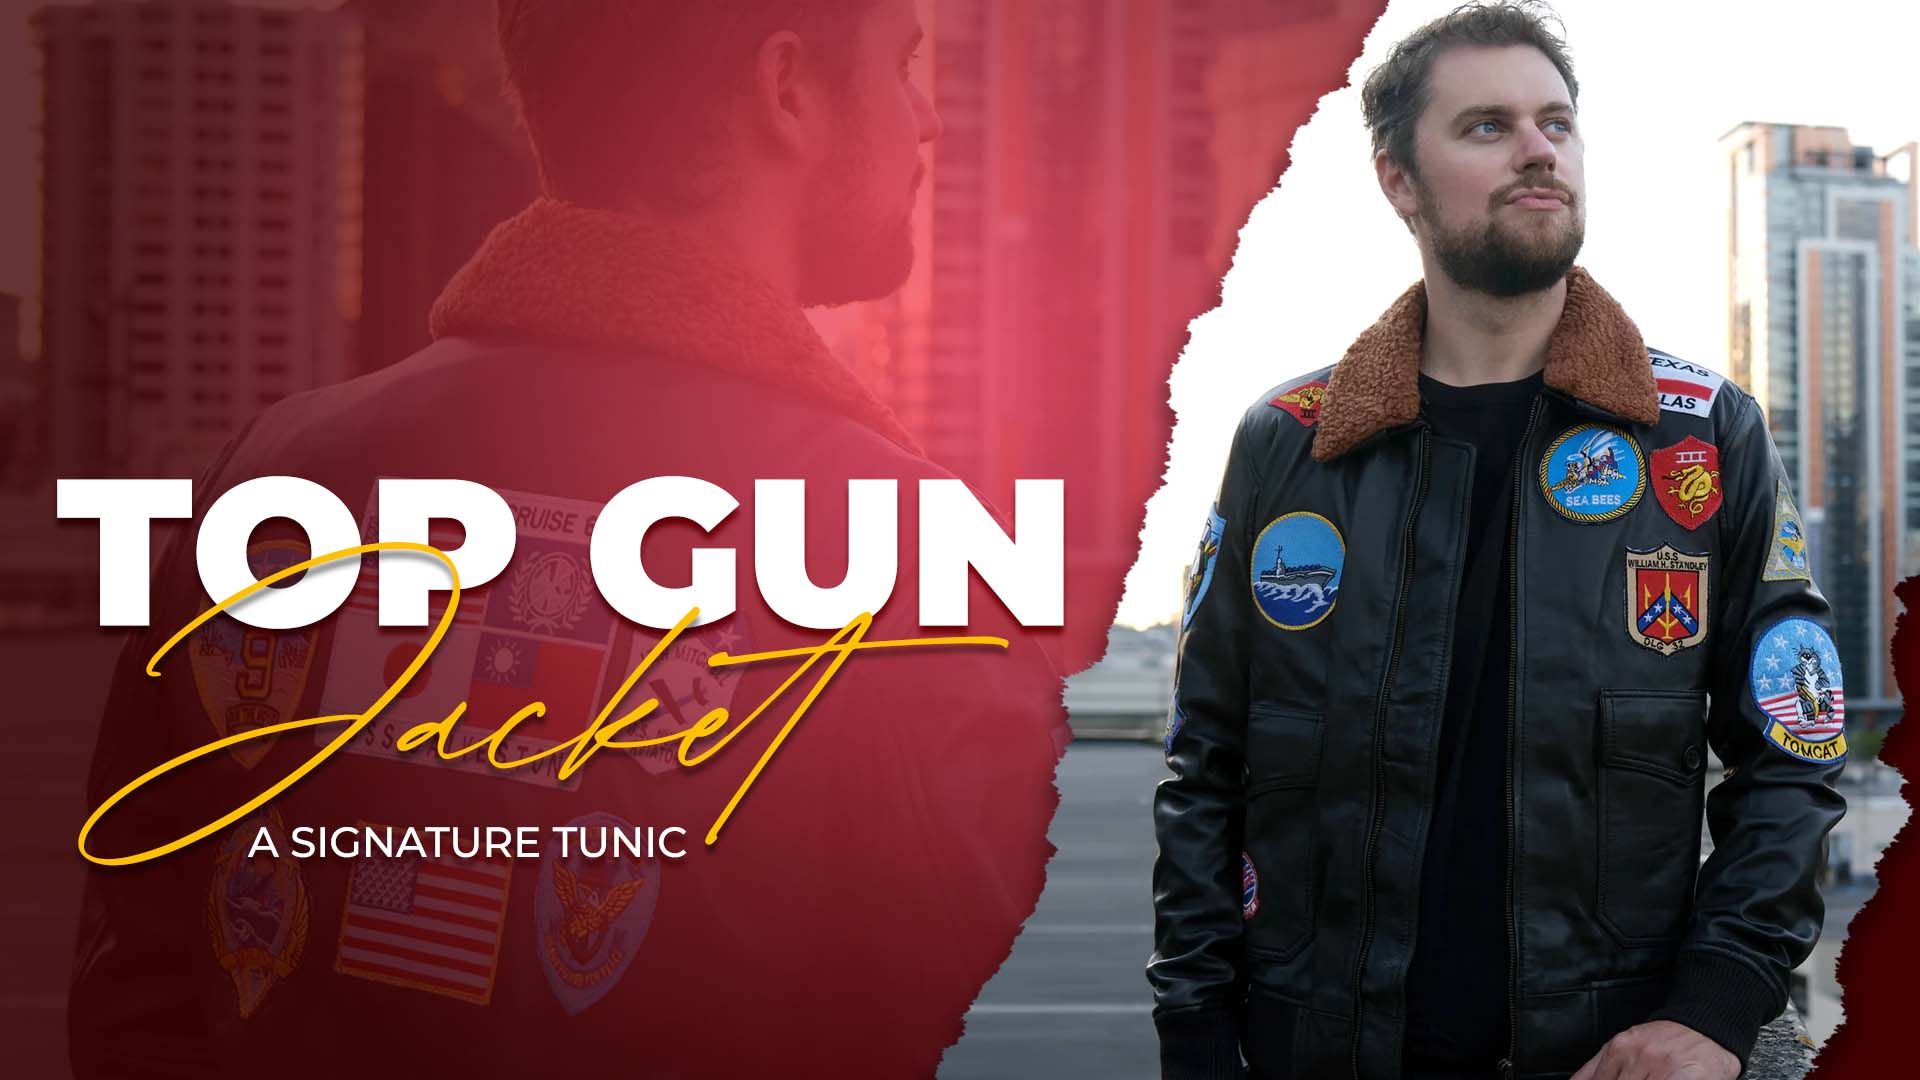 Top Gun Jacket - A Signature Tunic